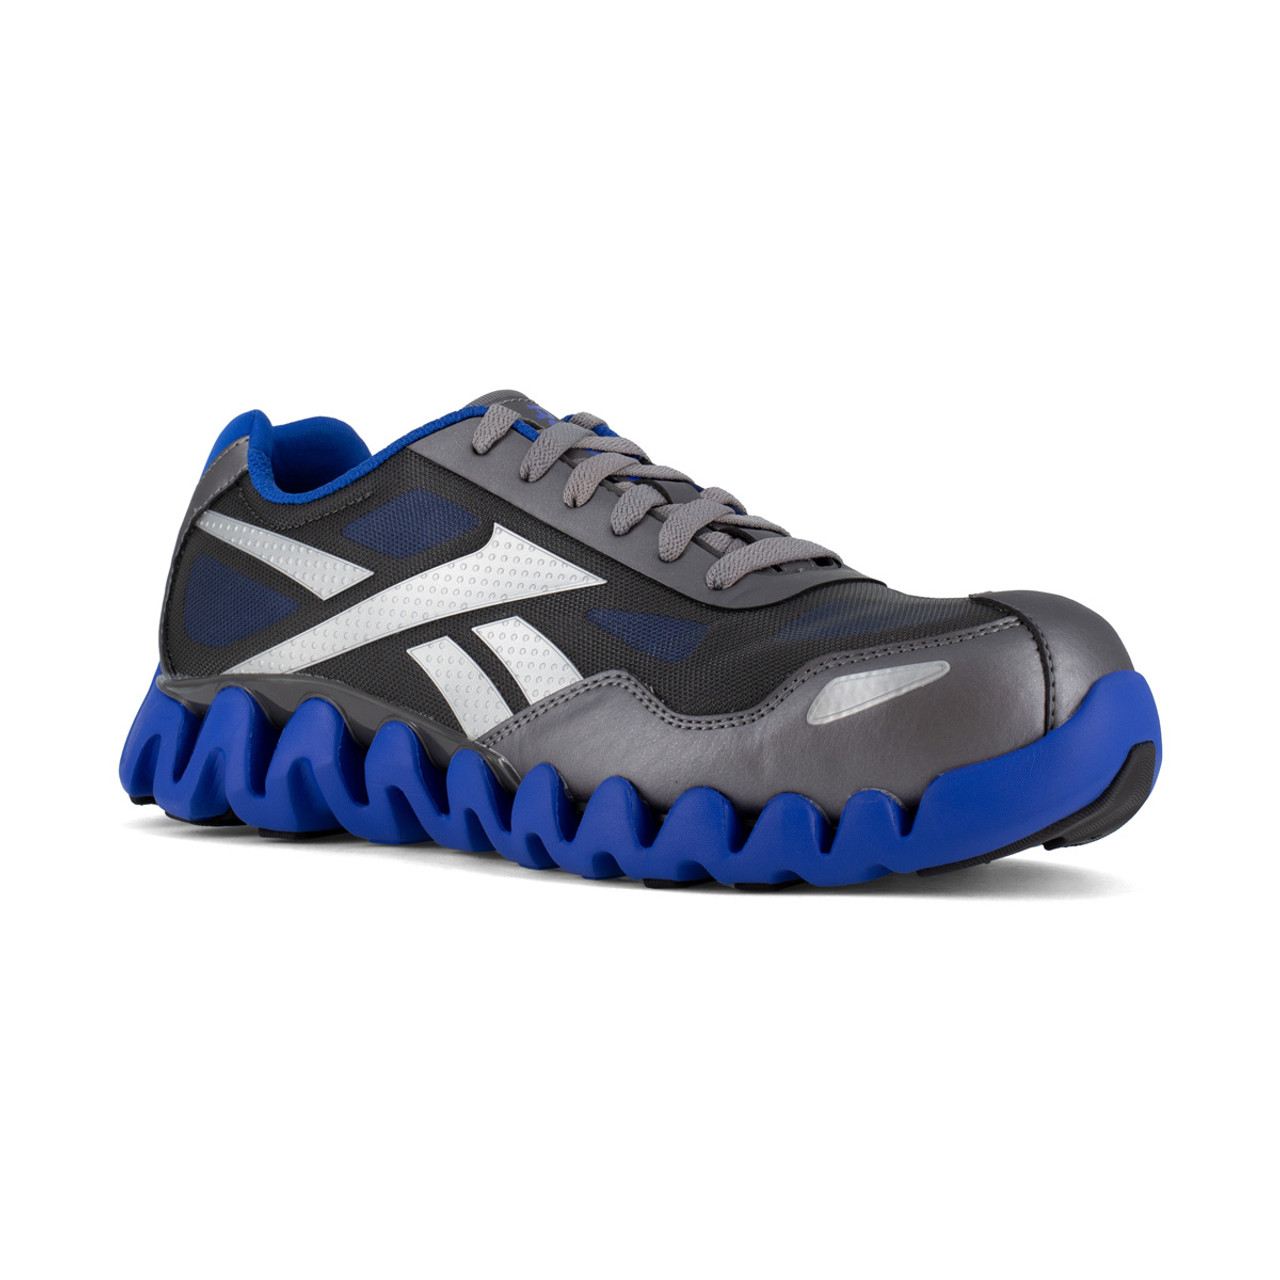 Reebok Zig Pulse Work - RB3016 - Men's Composite Toe Shoes